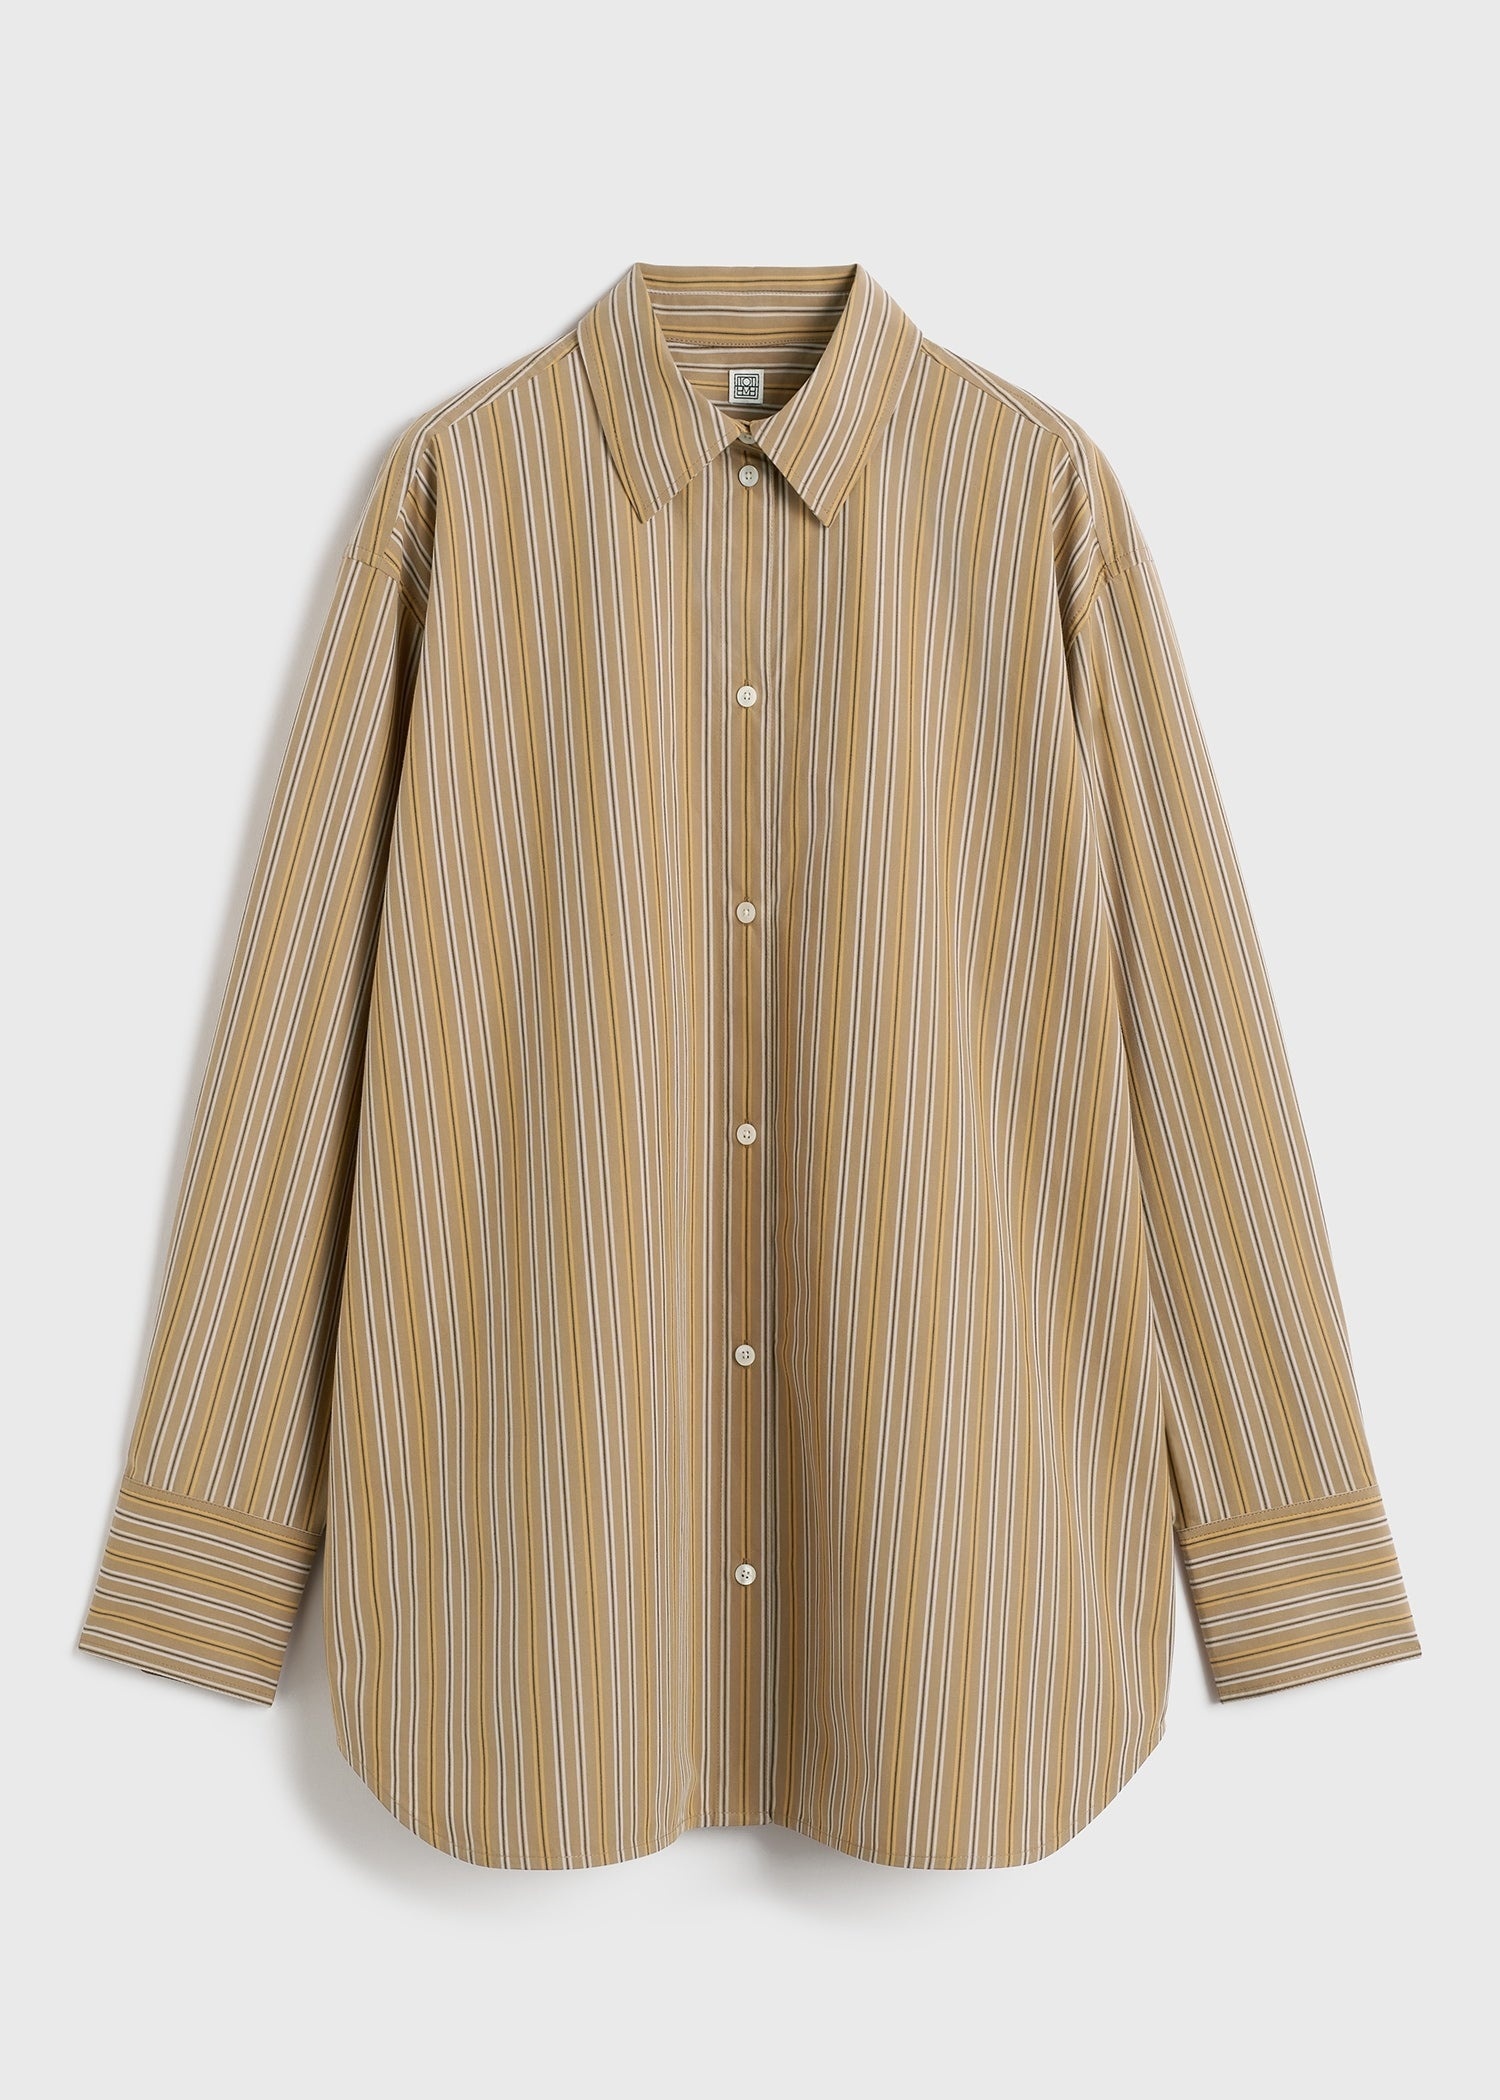 Relaxed striped cotton shirt caramel/cornsilk - 1